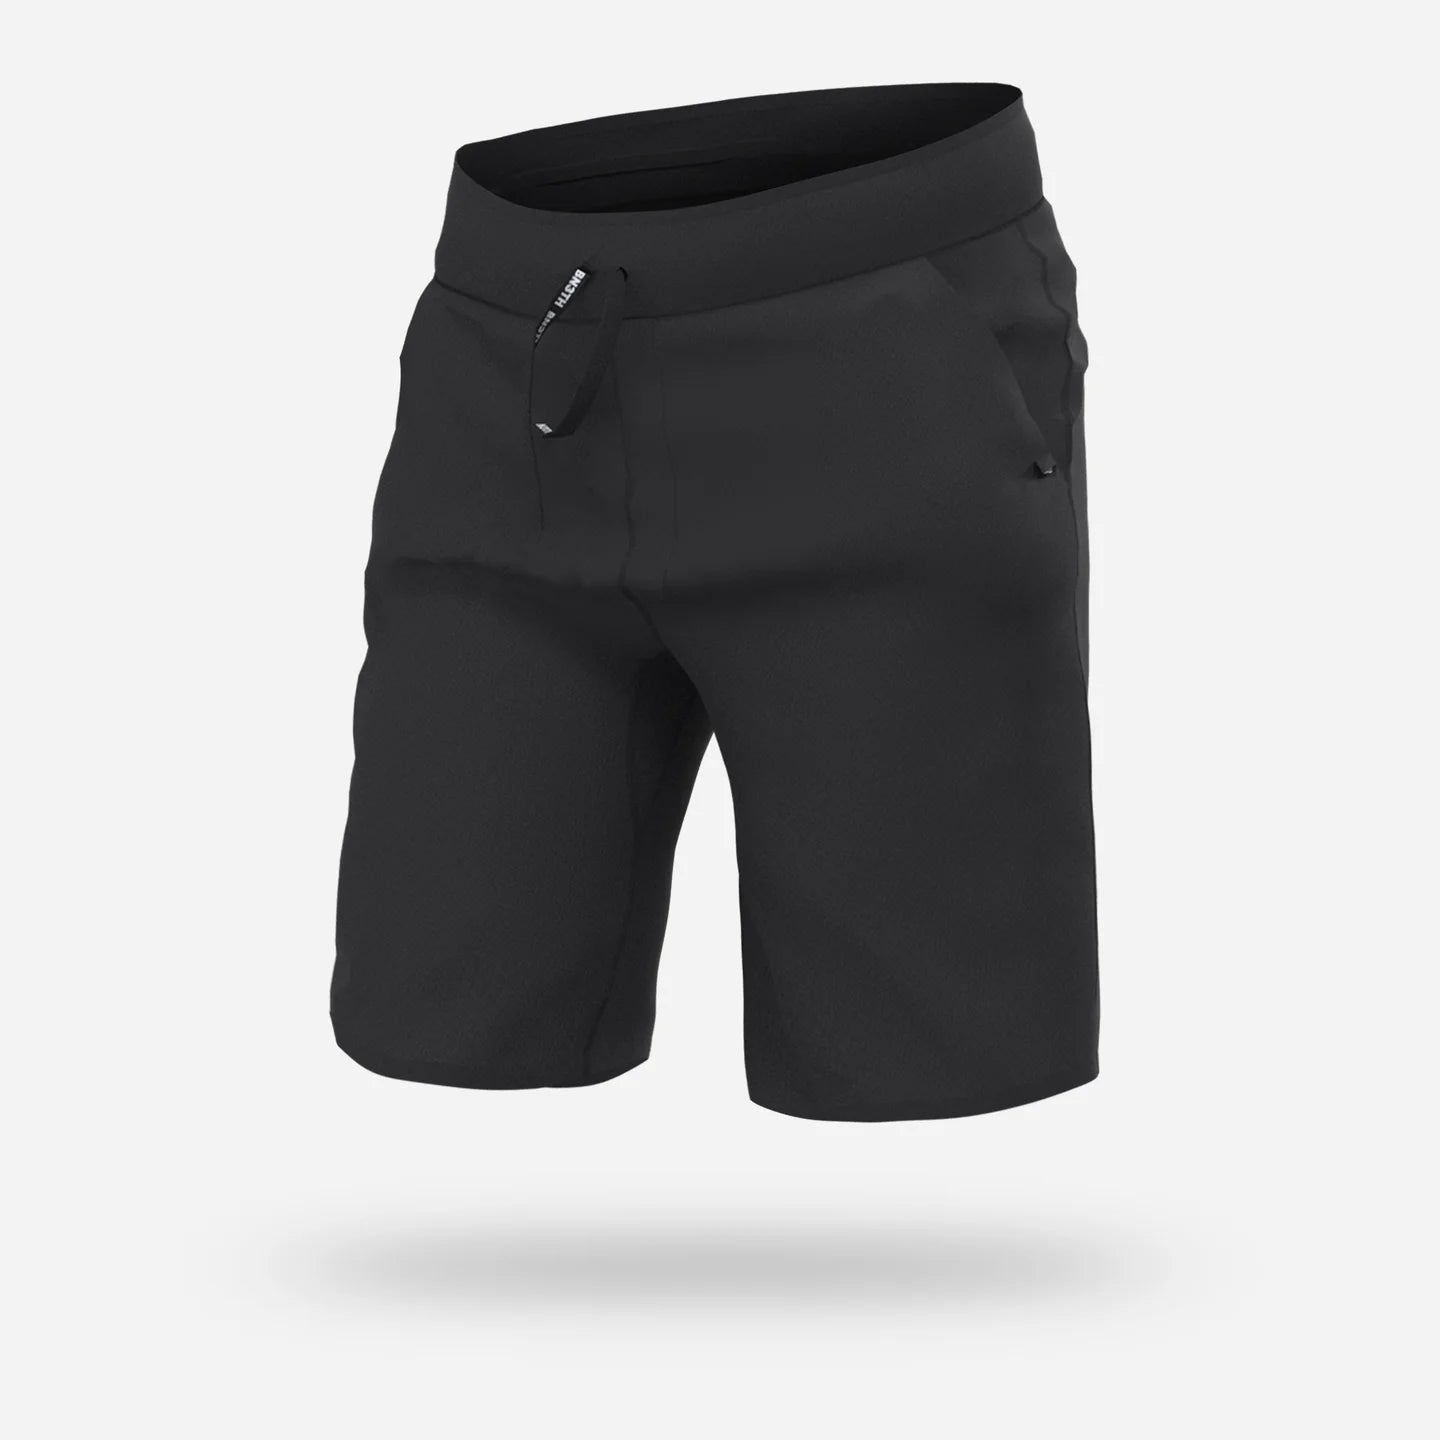 Bn3th - Sleepwear Shorts : Black 